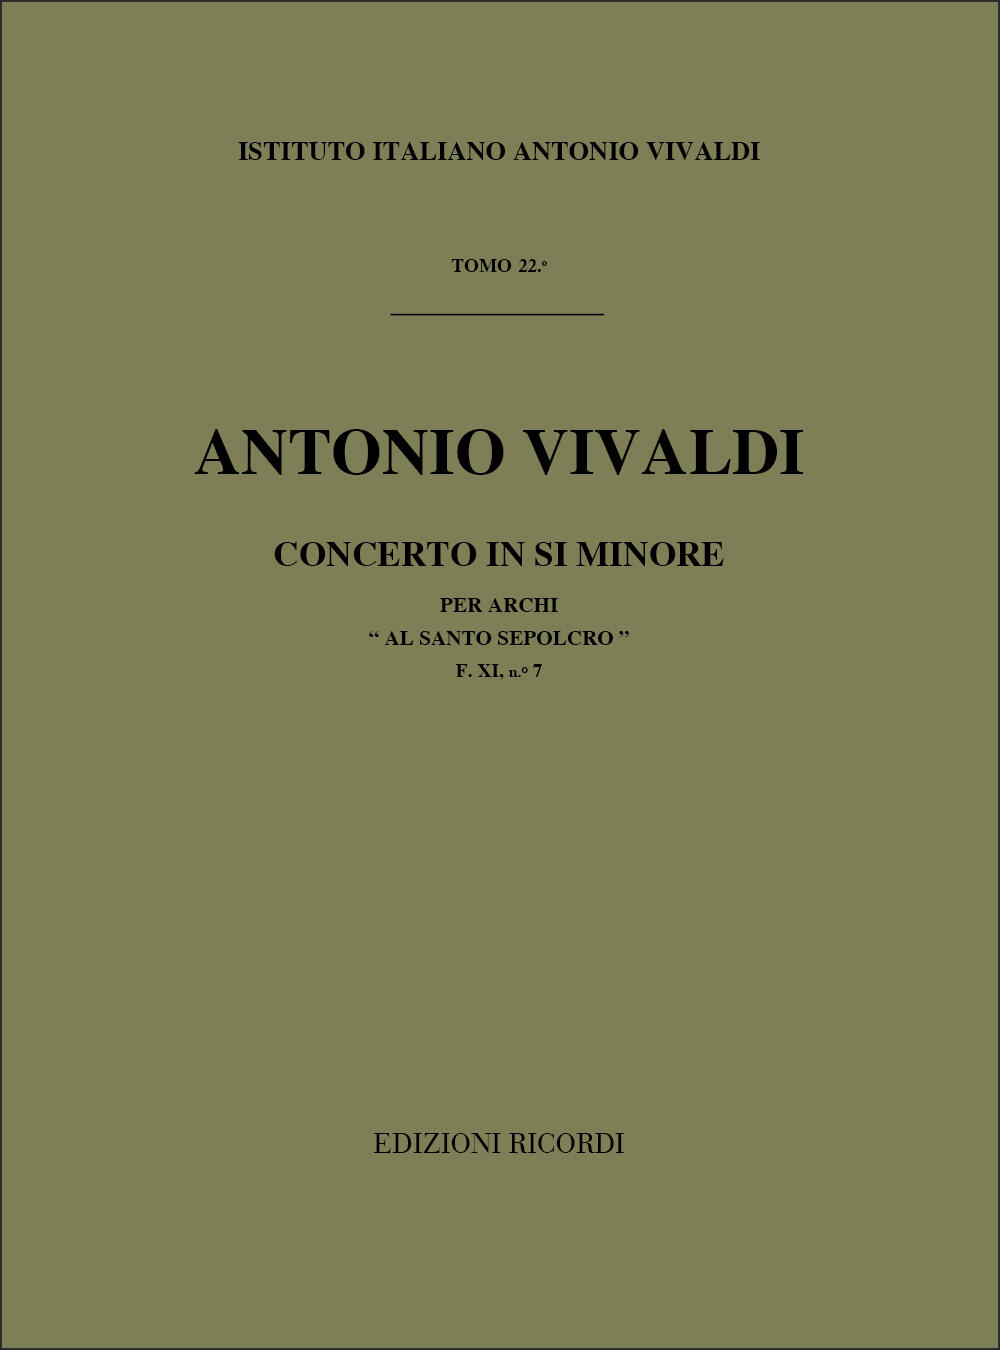 Concerto per Archi Sinfonia in Si Min. Rv 169 